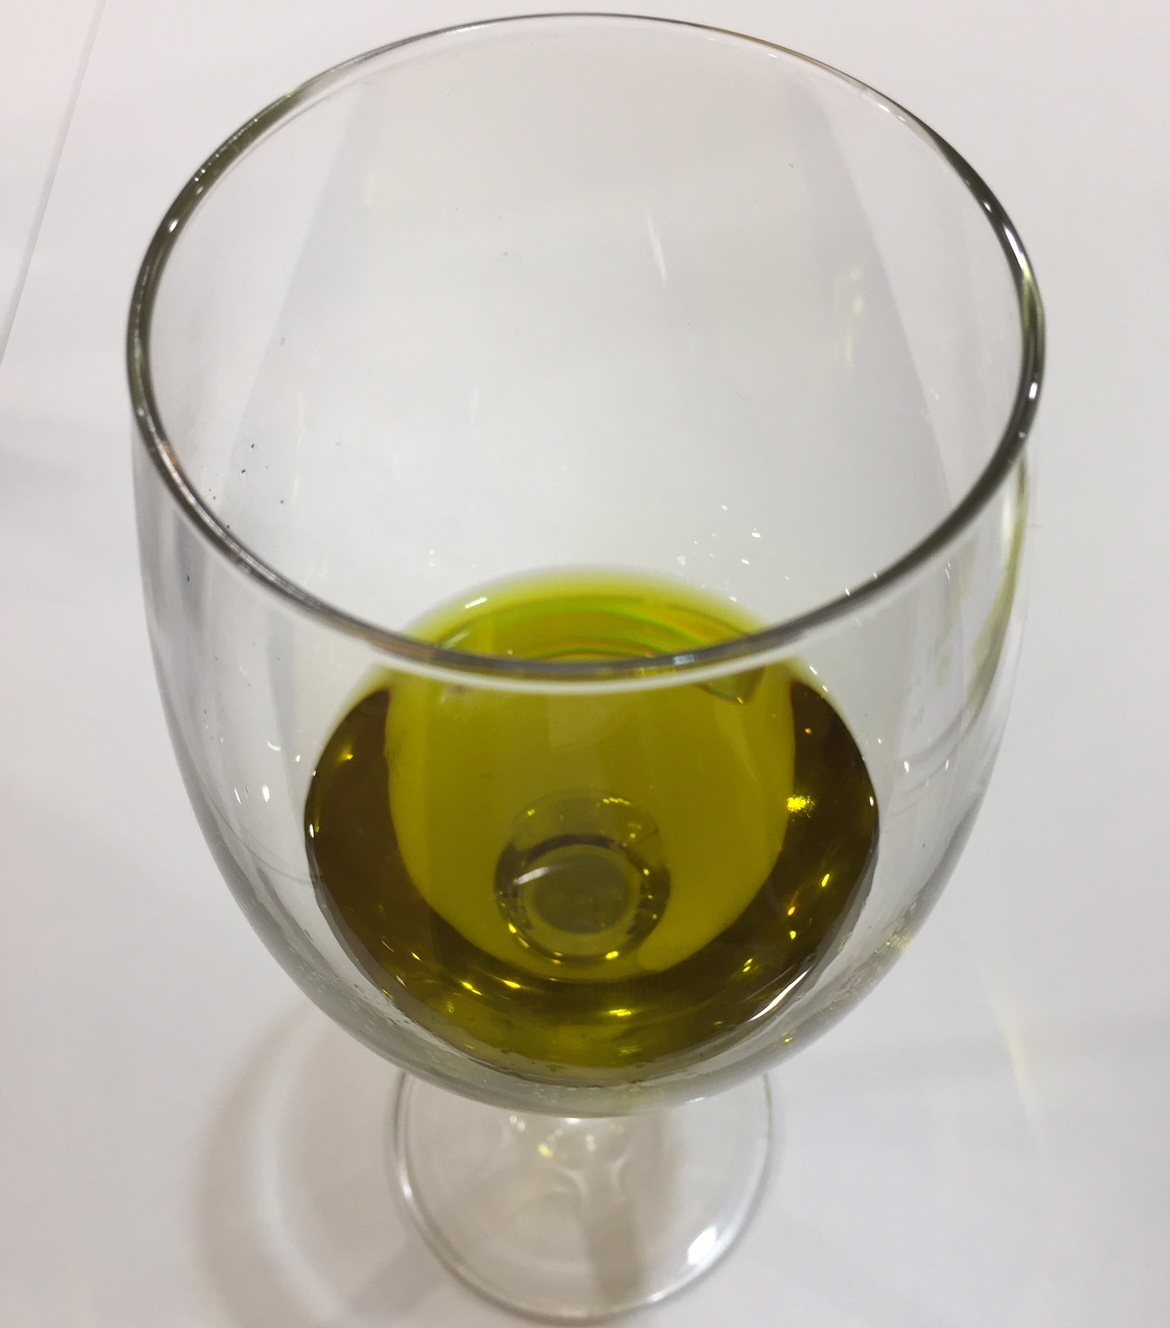 International Symposium on olive oil & health